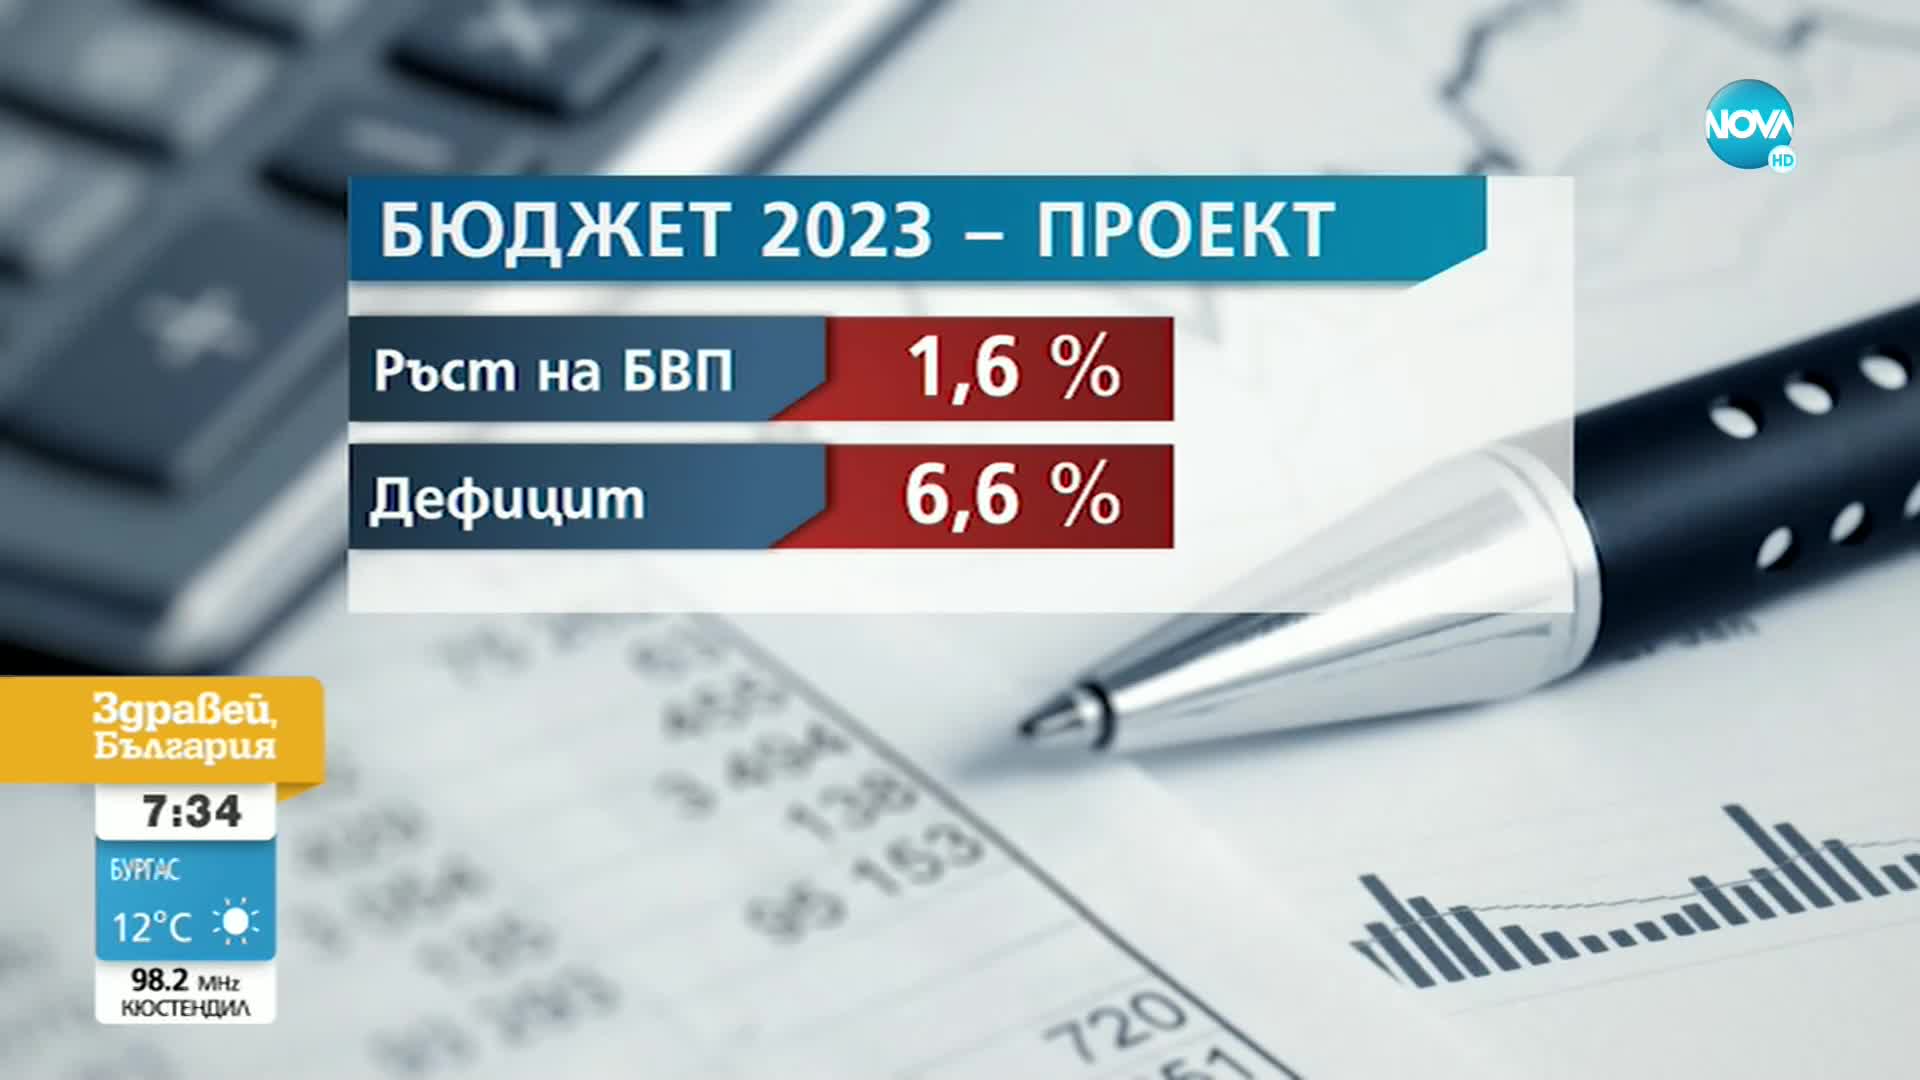 Димитров, ДБ: Да не се допуска удвояване на държавния дълг, както предлага служебният кабинет